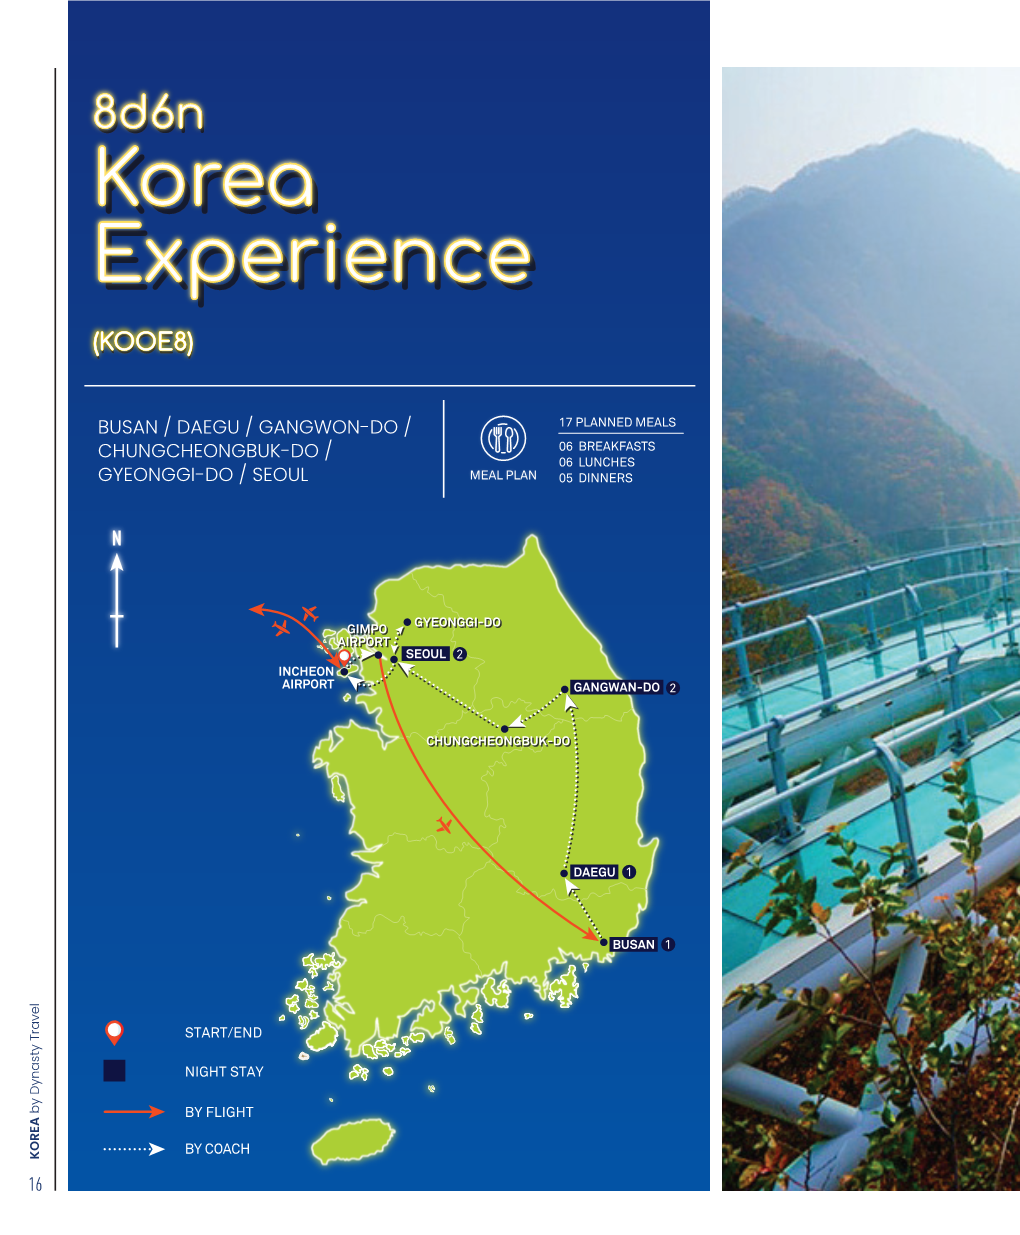 Korea Experience Korea Experience Korea Experience